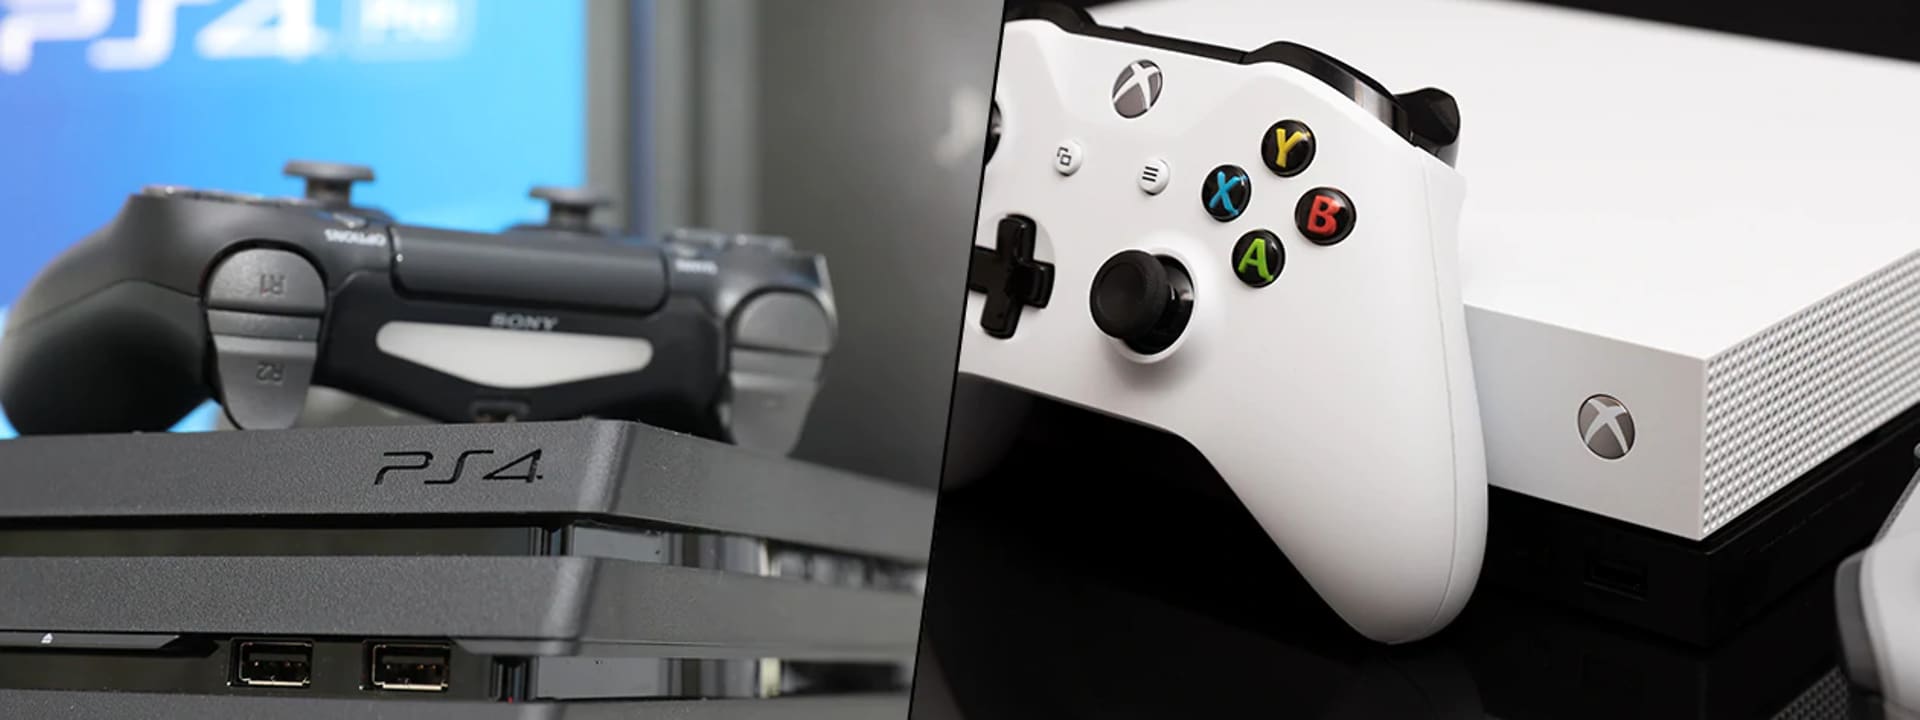 Xbox One X eller PlayStation 4 Pro – hvilken skal du velge? | Elkjøp